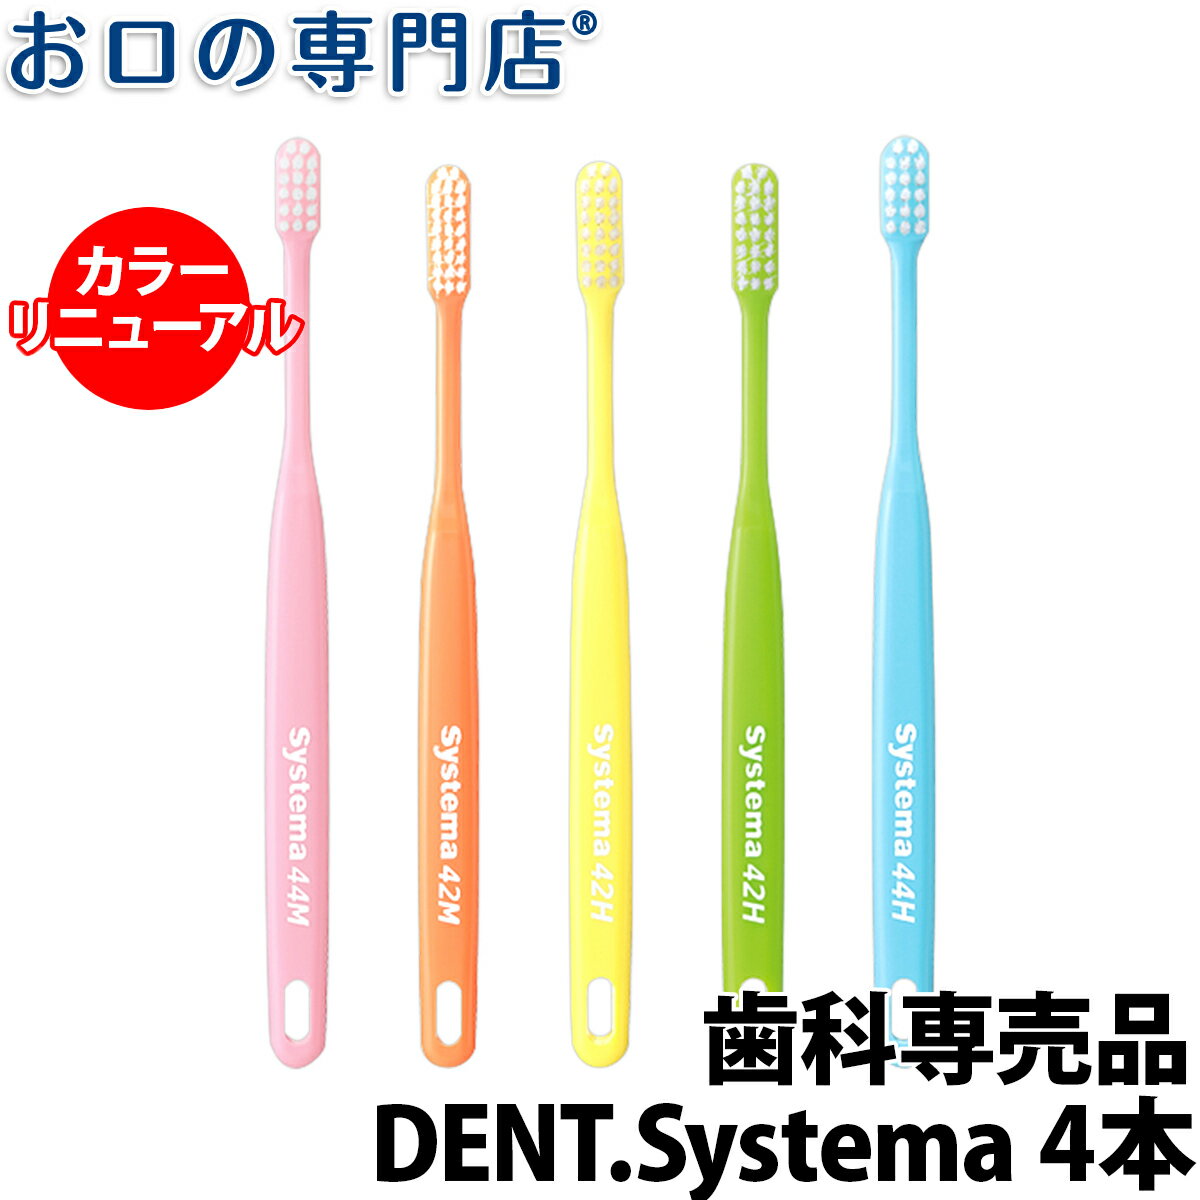 【送料無料】DENT.EX systema 歯ブラシ 4本 + 艶白 歯ブラシ 1本【デント EX システマ】